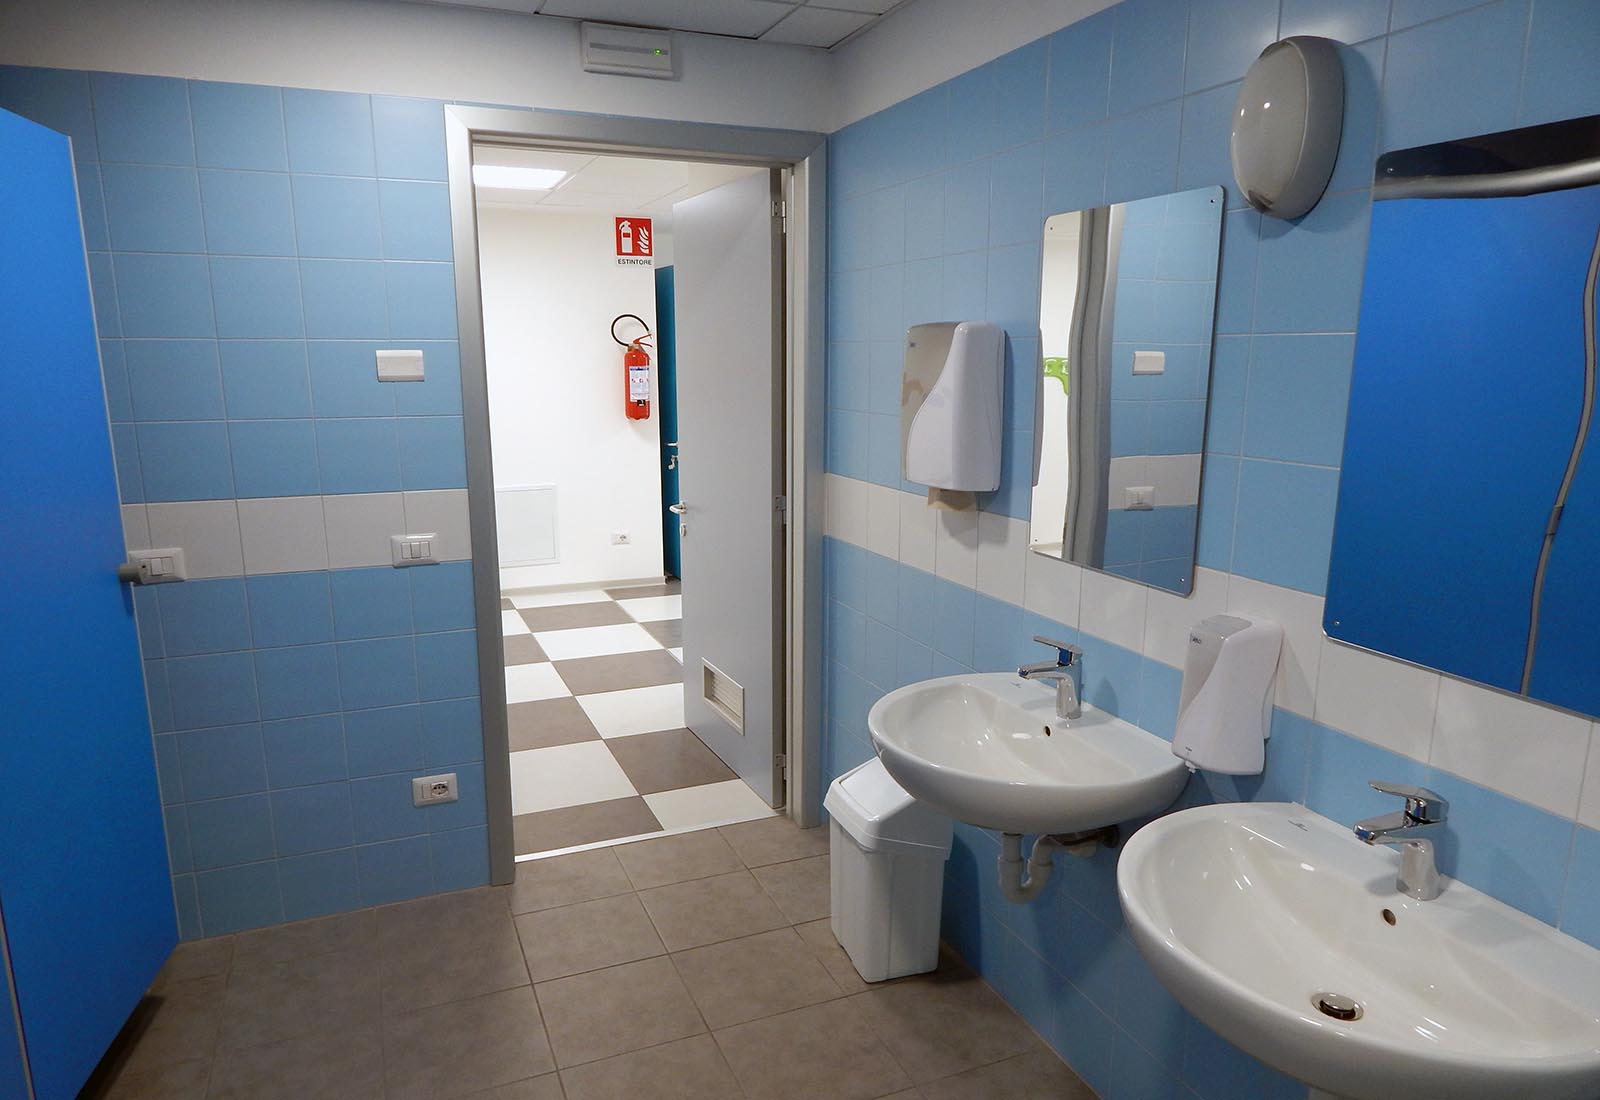 Primary school in Gravedona - The toilets